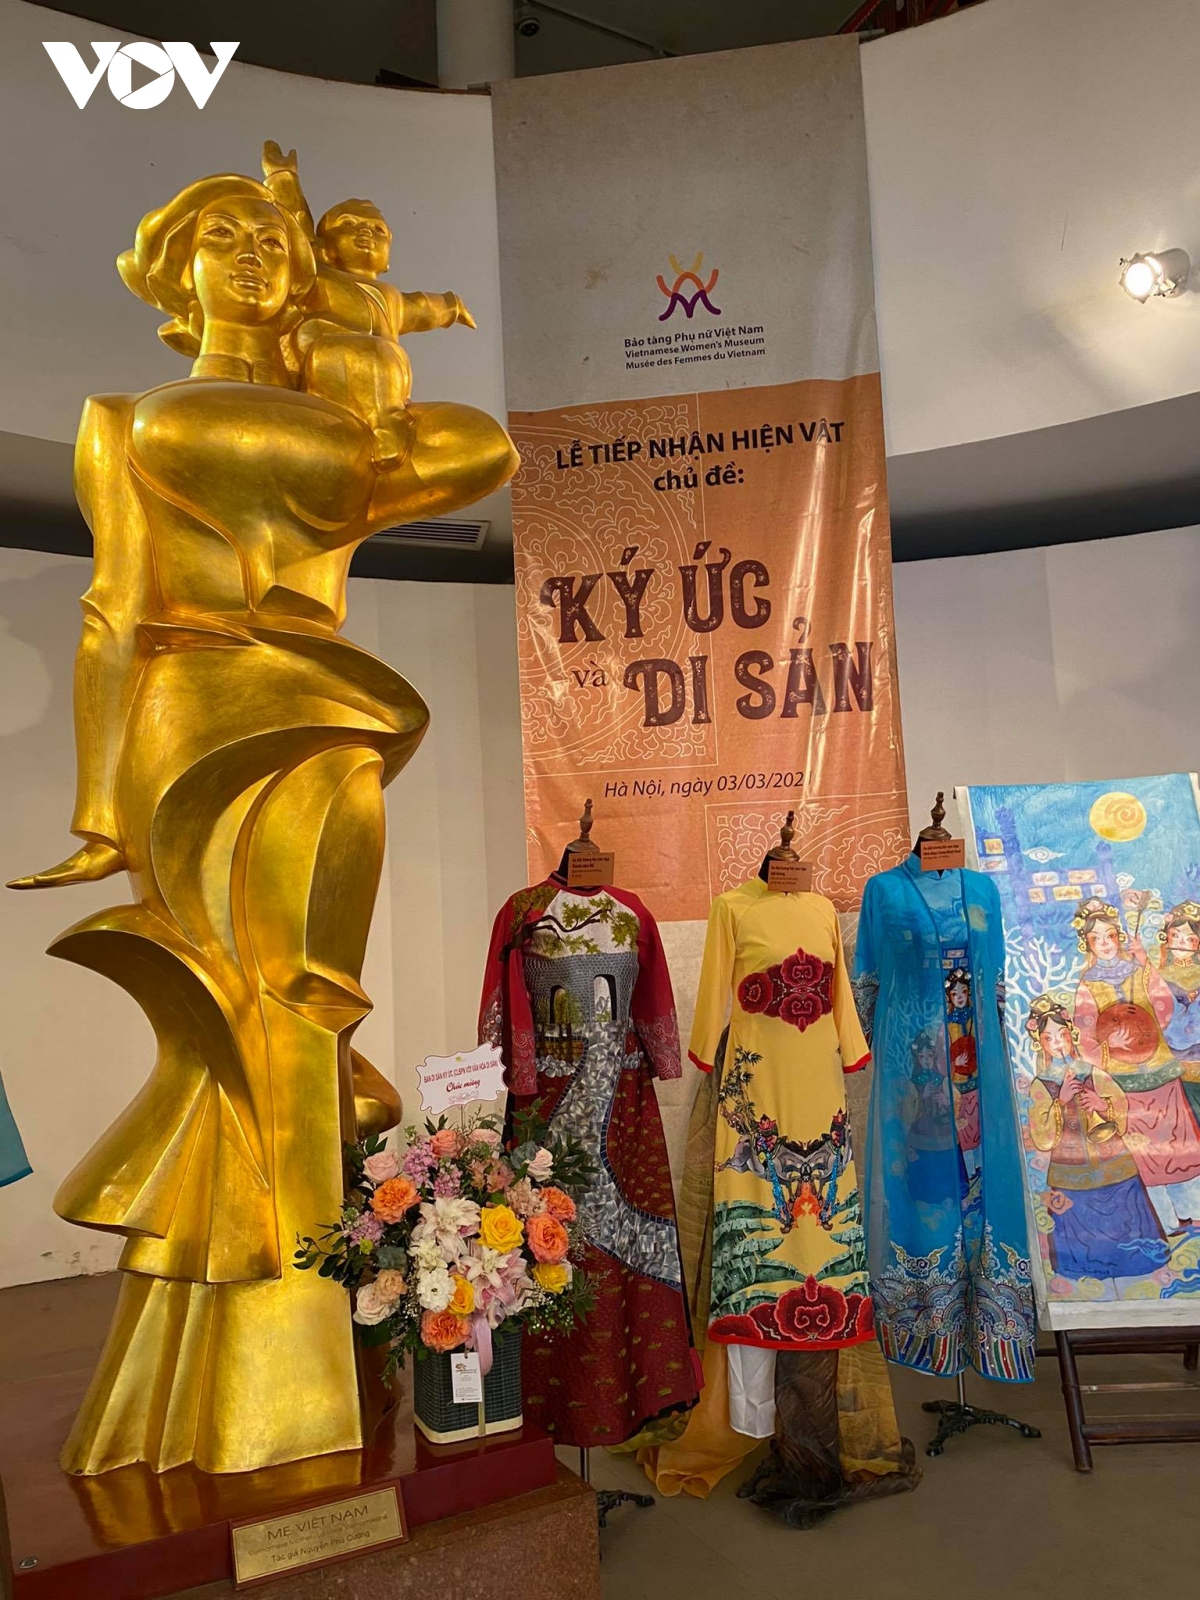 Bảo tàng Phụ nữ Việt Nam tiếp nhận hình ảnh, hiện vật với chủ đề “Ký ức và di sản"